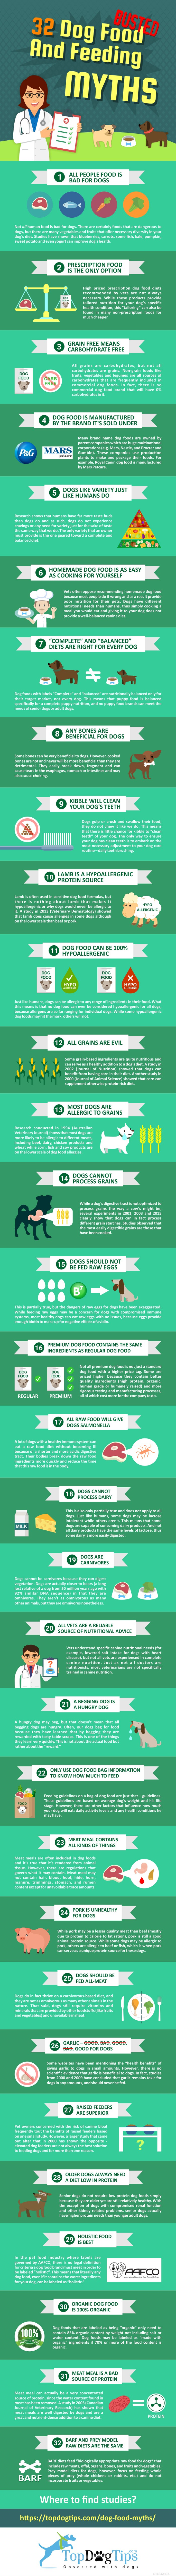 31 miti sull alimentazione e il cibo per cani sfatati [Infografica]